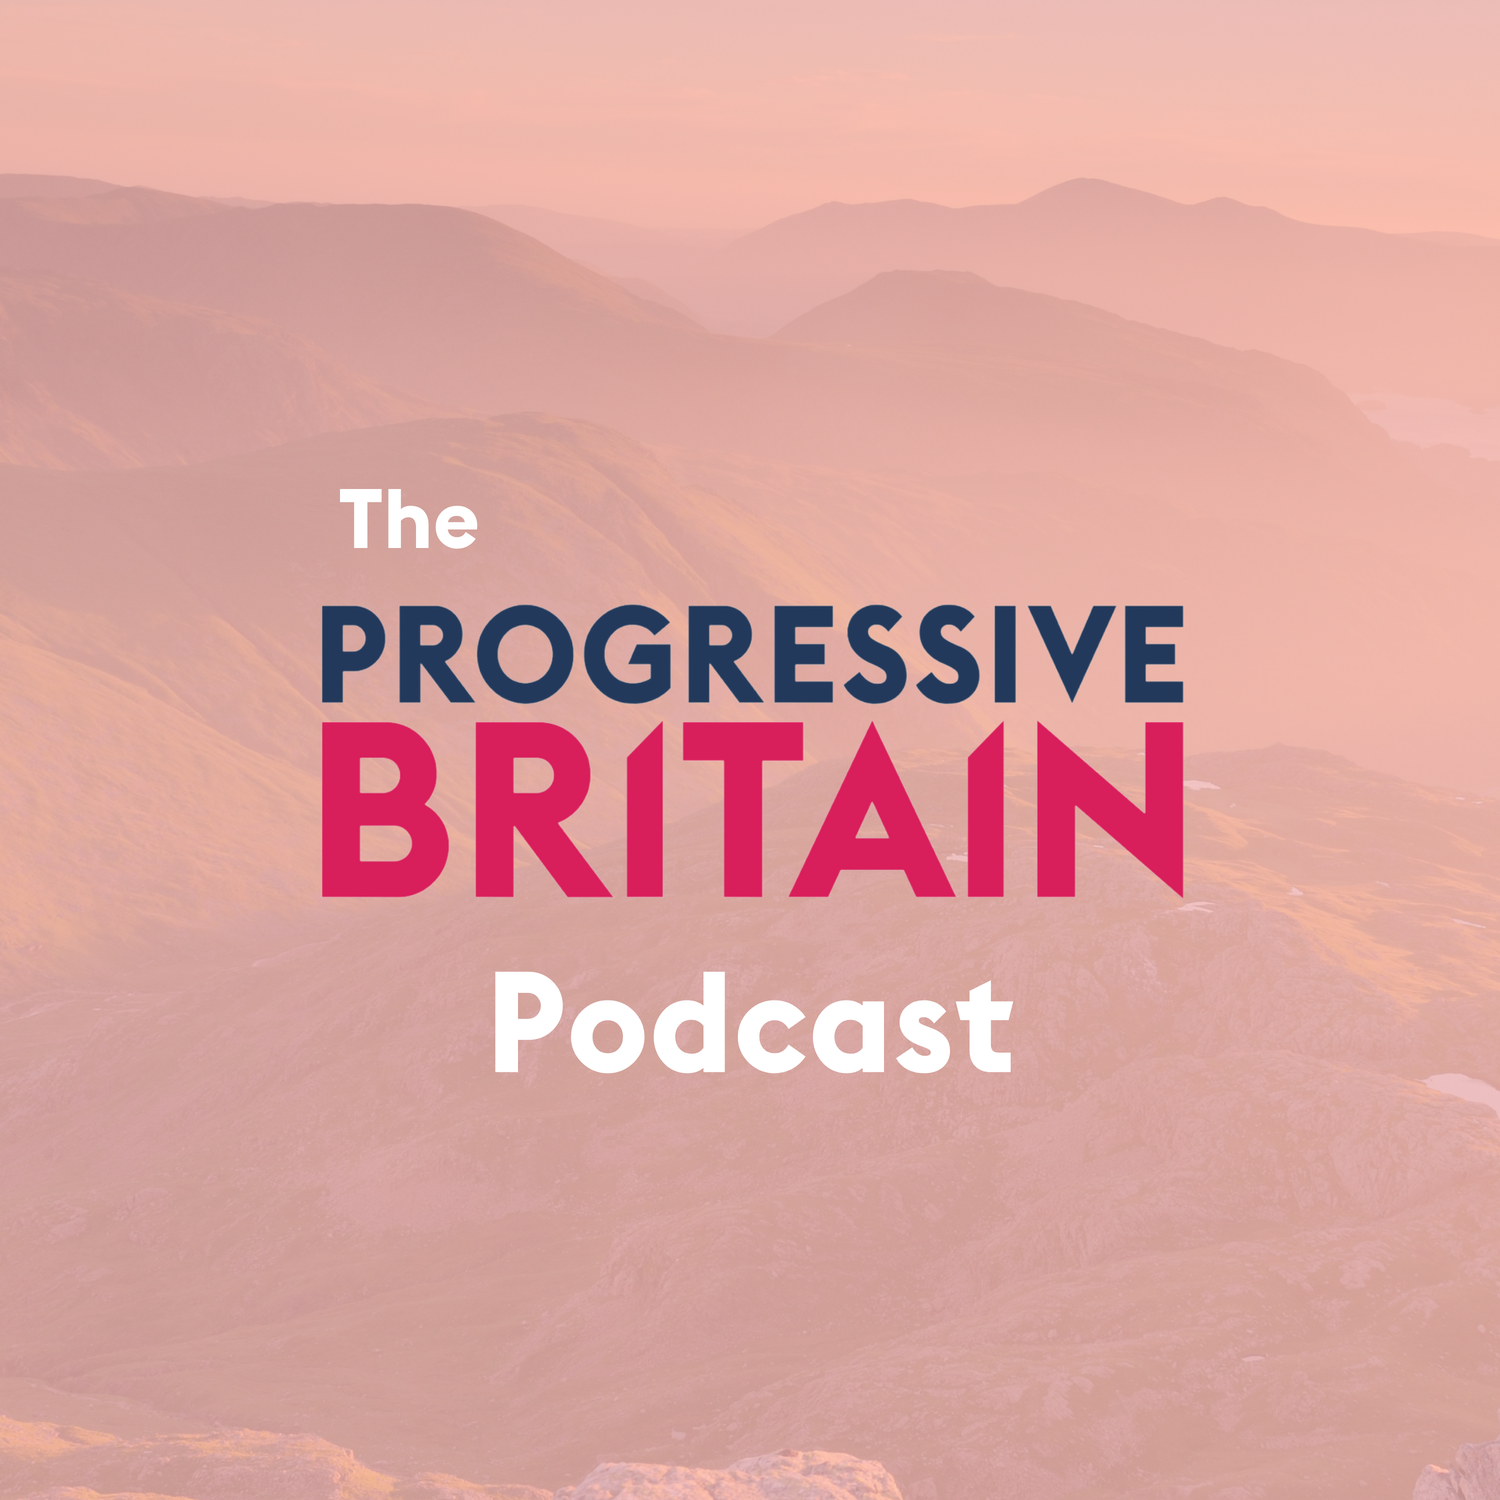 The Progressive Britain Podcast